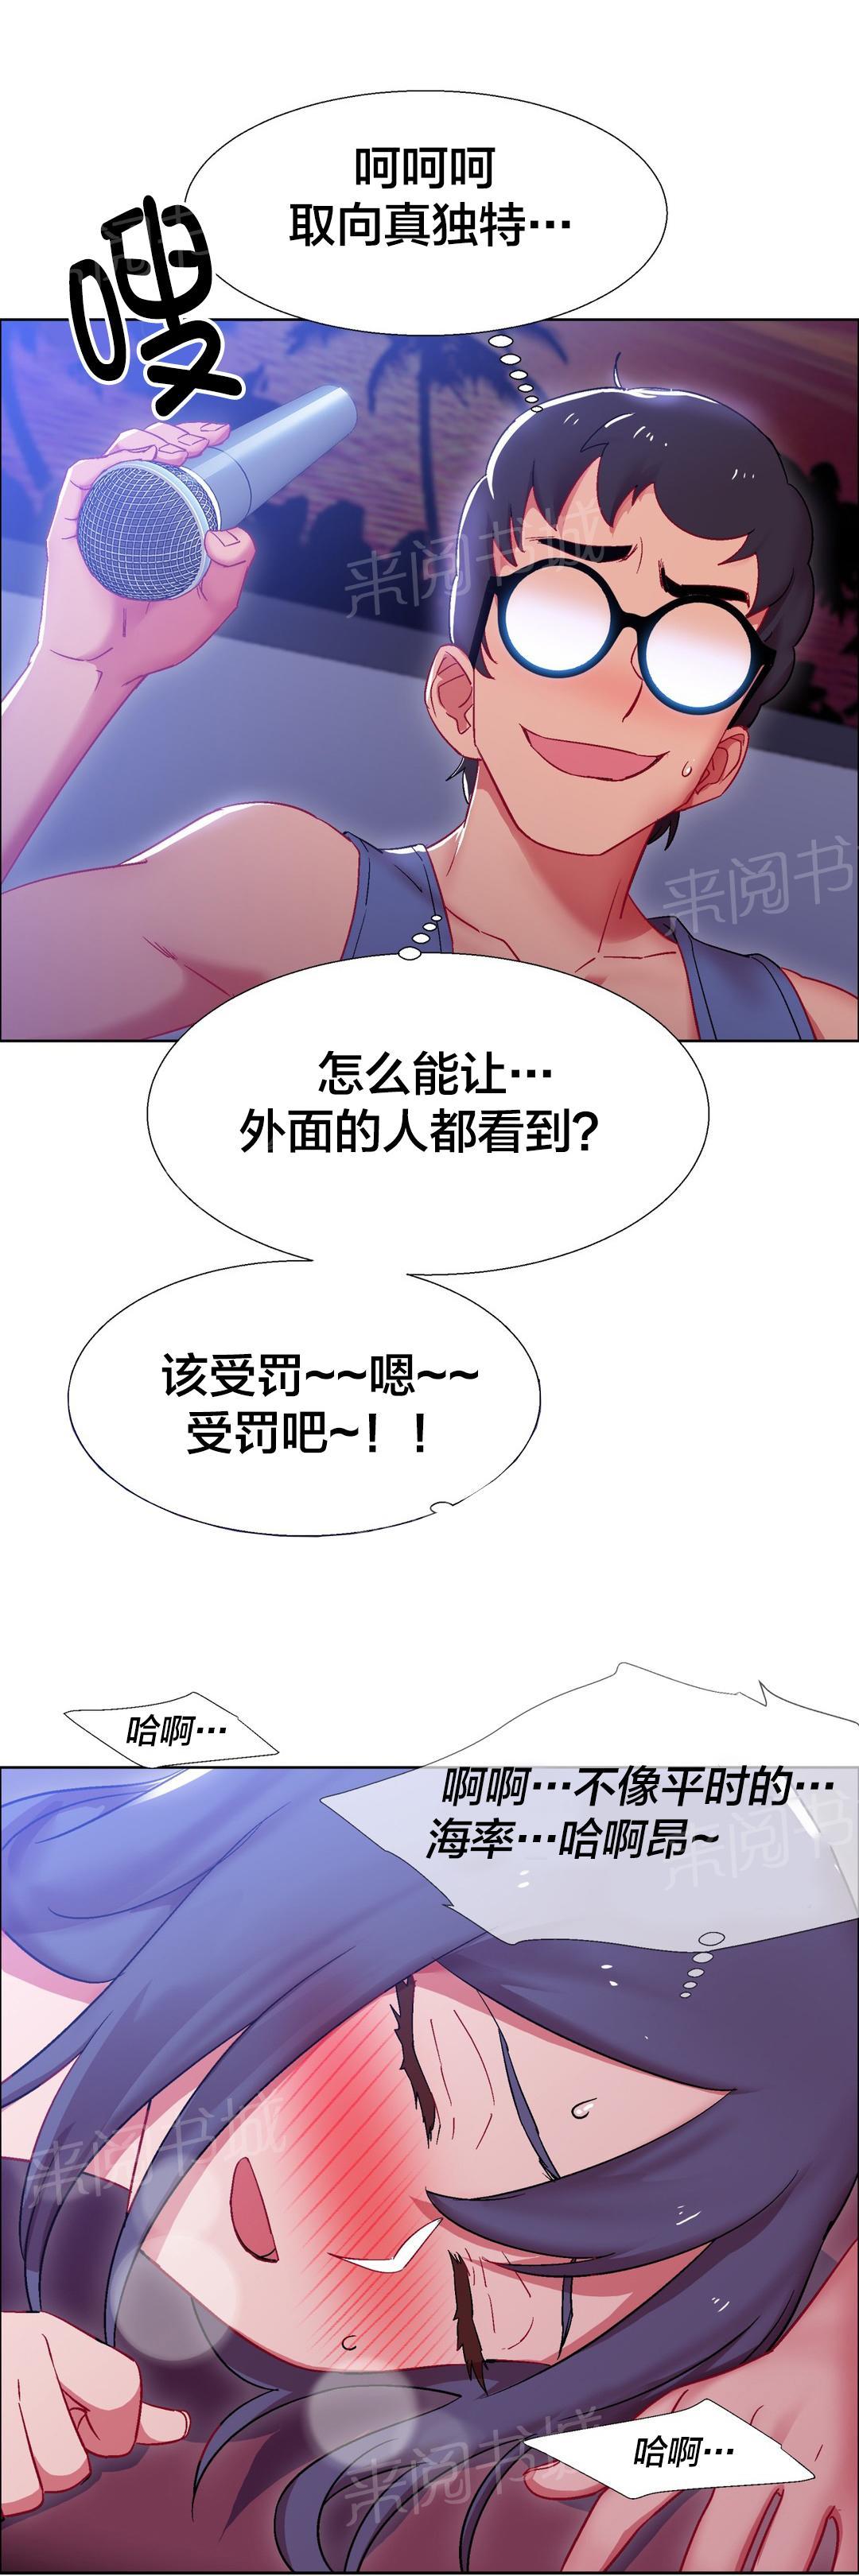 香艳小店  第32话 漫画图片2.jpg